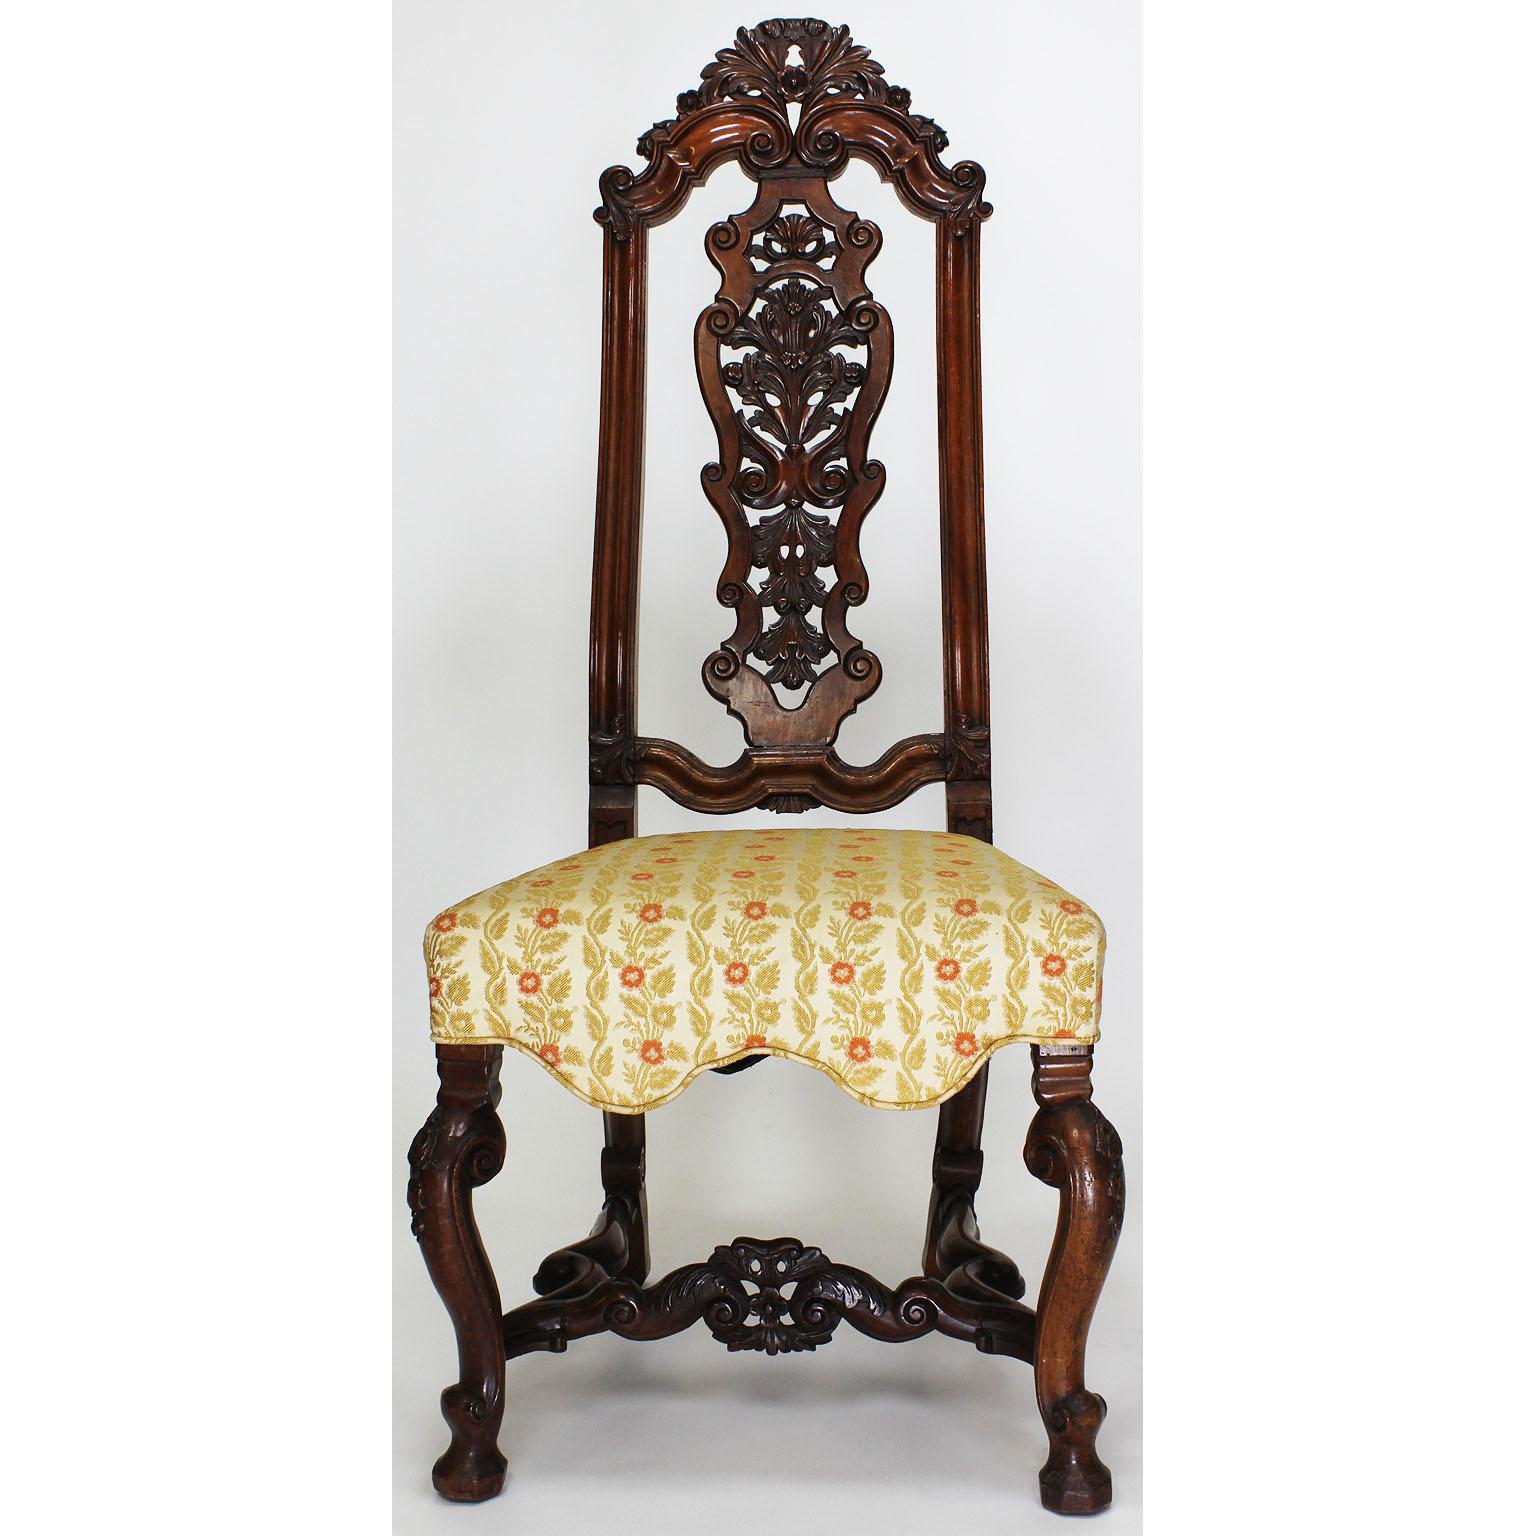 Une belle paire de chaises d'appoint portugaises en noyer sculpté du XIXe siècle à haut dossier. Les dossiers sont ornés de volutes et de motifs floraux et reposent sur quatre pieds cabriolets reliés par une barre transversale florale, vers